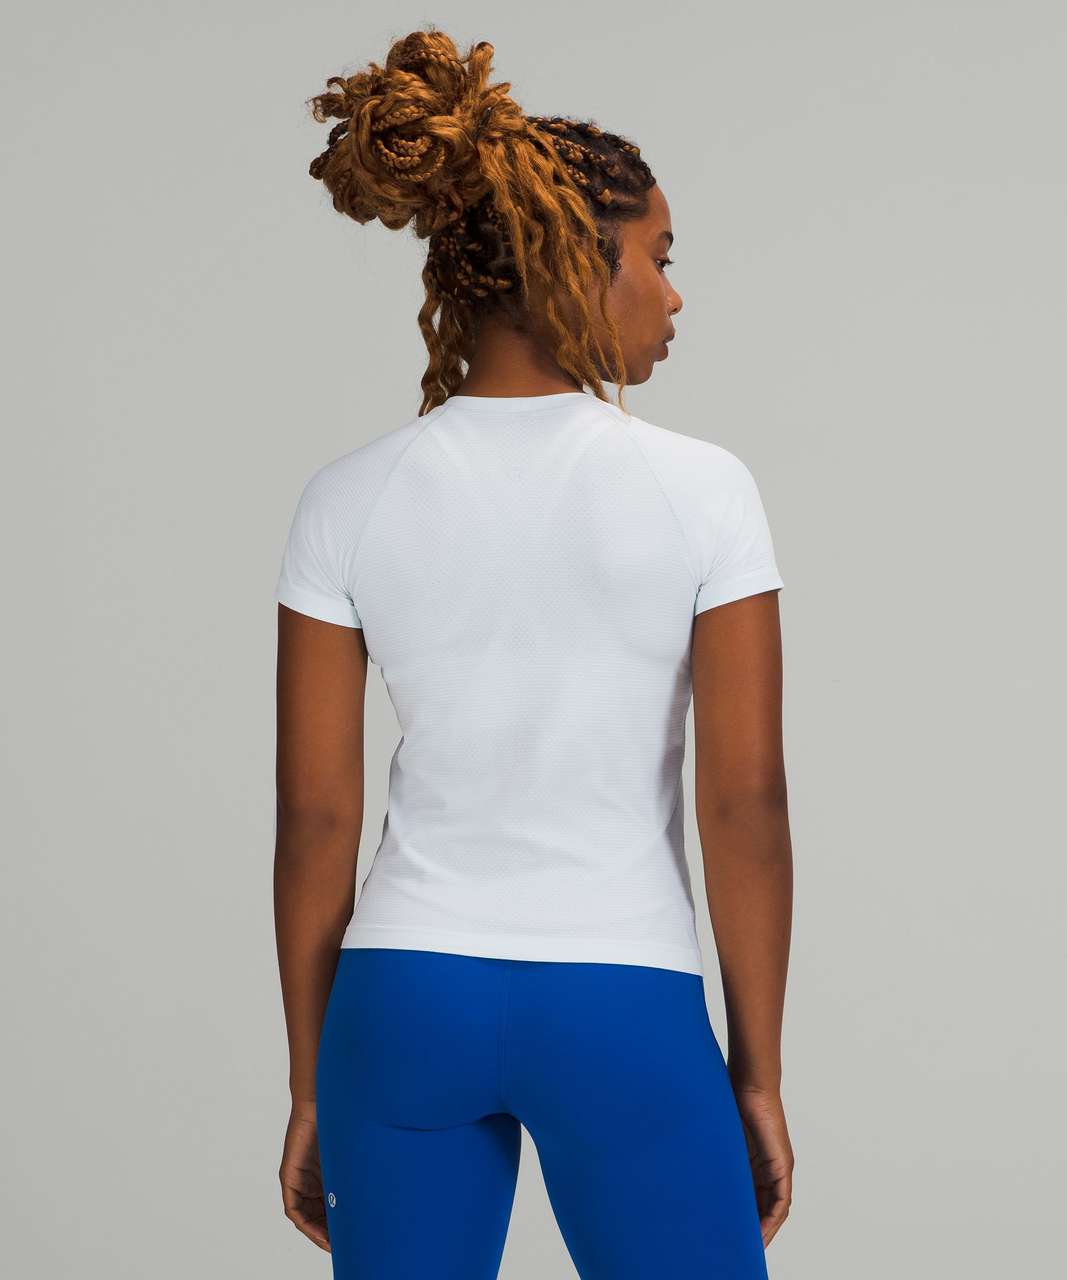 Lululemon Swiftly Tech Short Sleeve Shirt 2.0 *Race Length - Ocean Air / Ocean Air